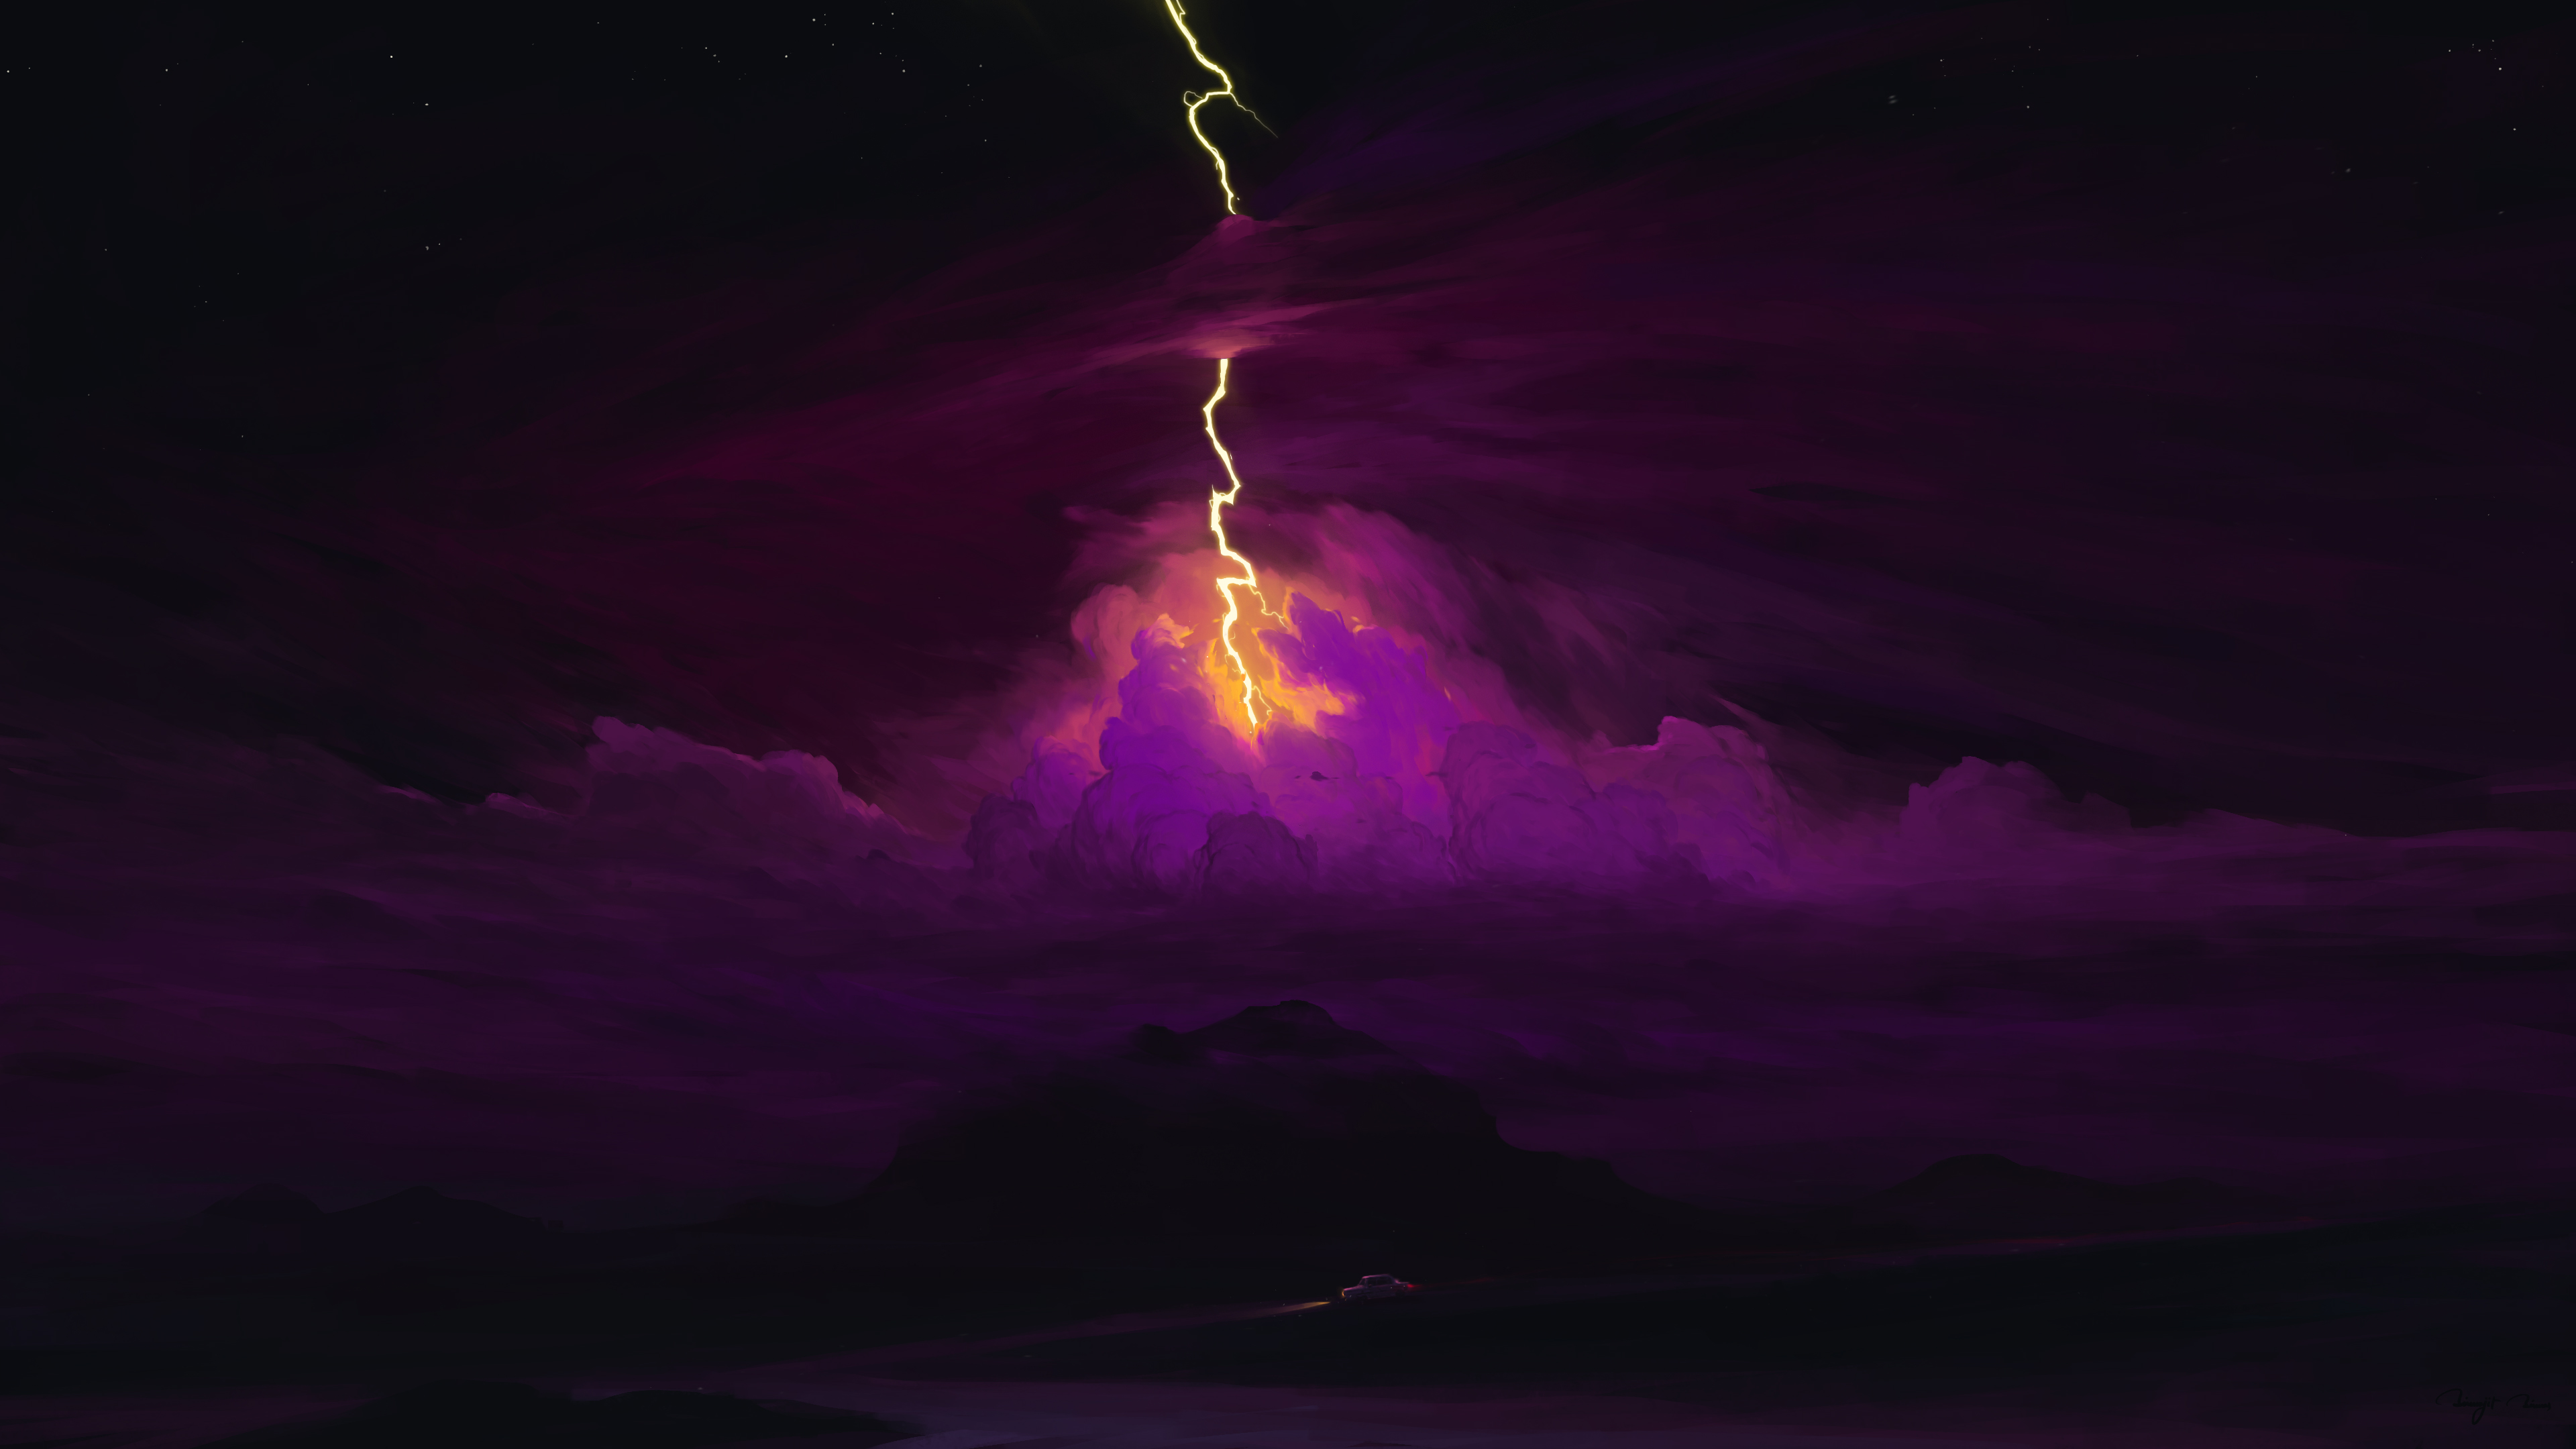 BisBiswas Digital Art Artwork Illustration Landscape Clouds Stars Sky Lightning Nature 4K Vehicle Ca 3840x2160